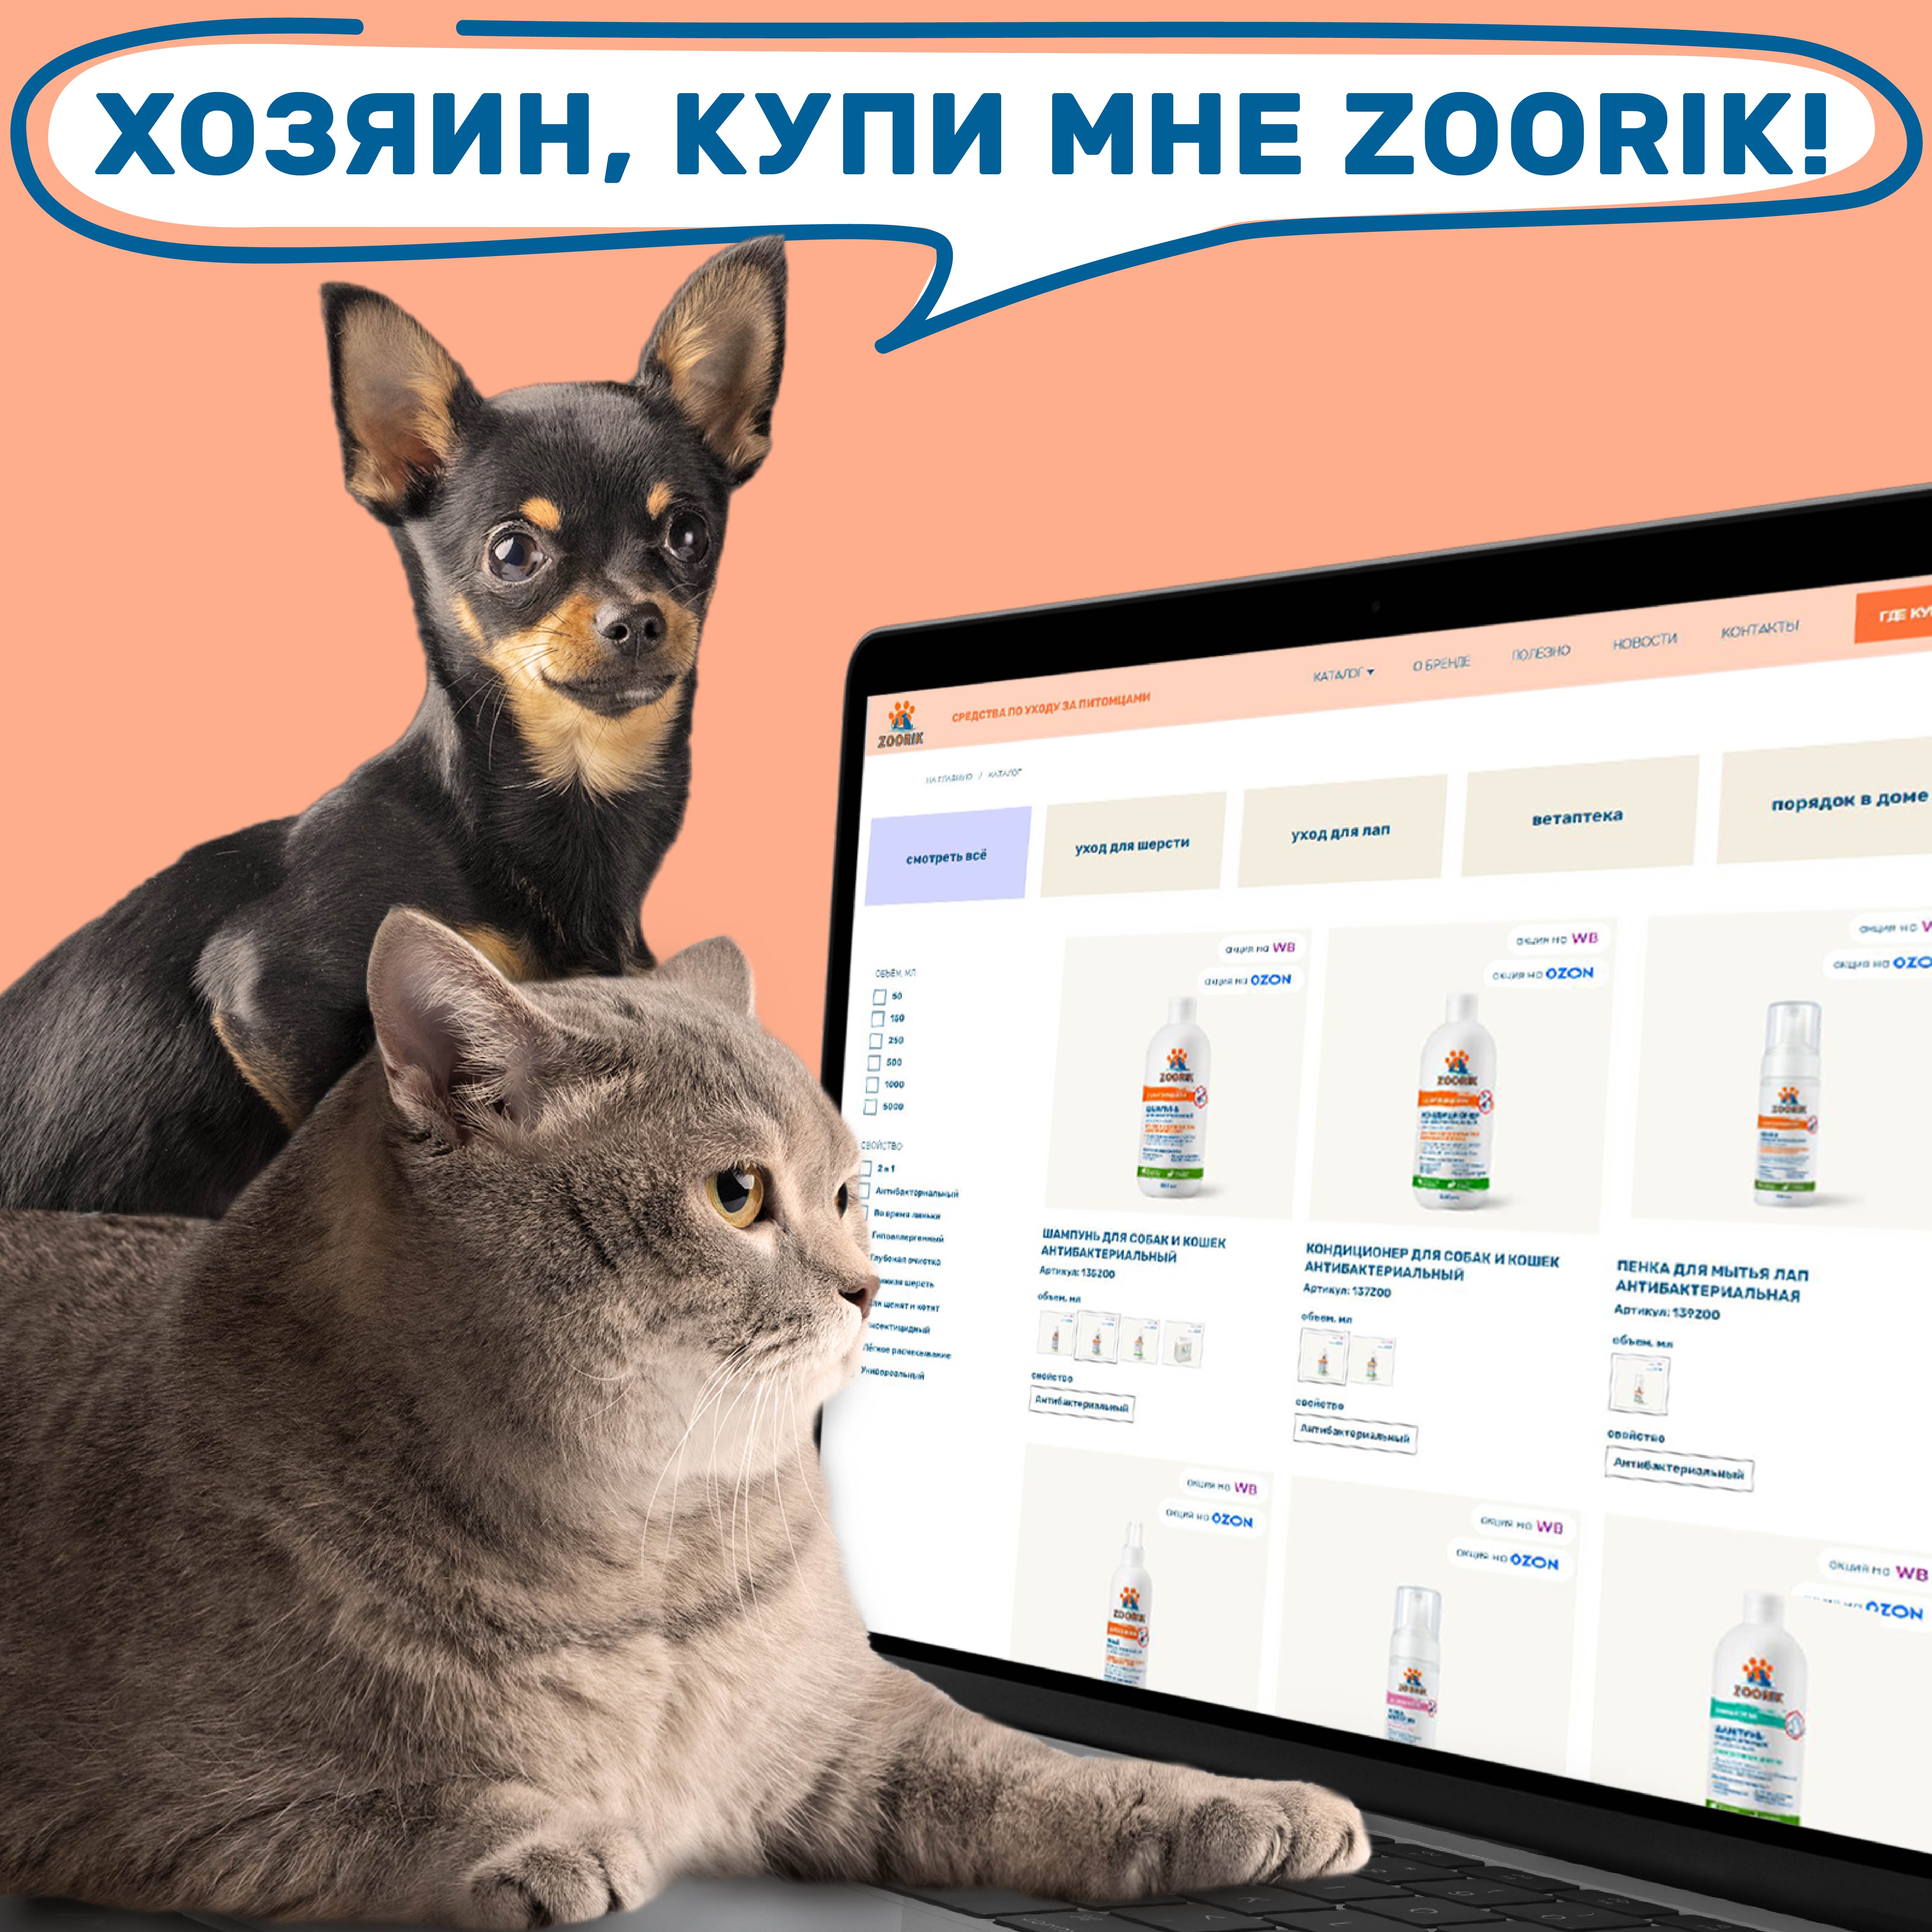 Кондиционер для собак и кошек ZOORIK гипоаллергенный 500 мл - фото 13